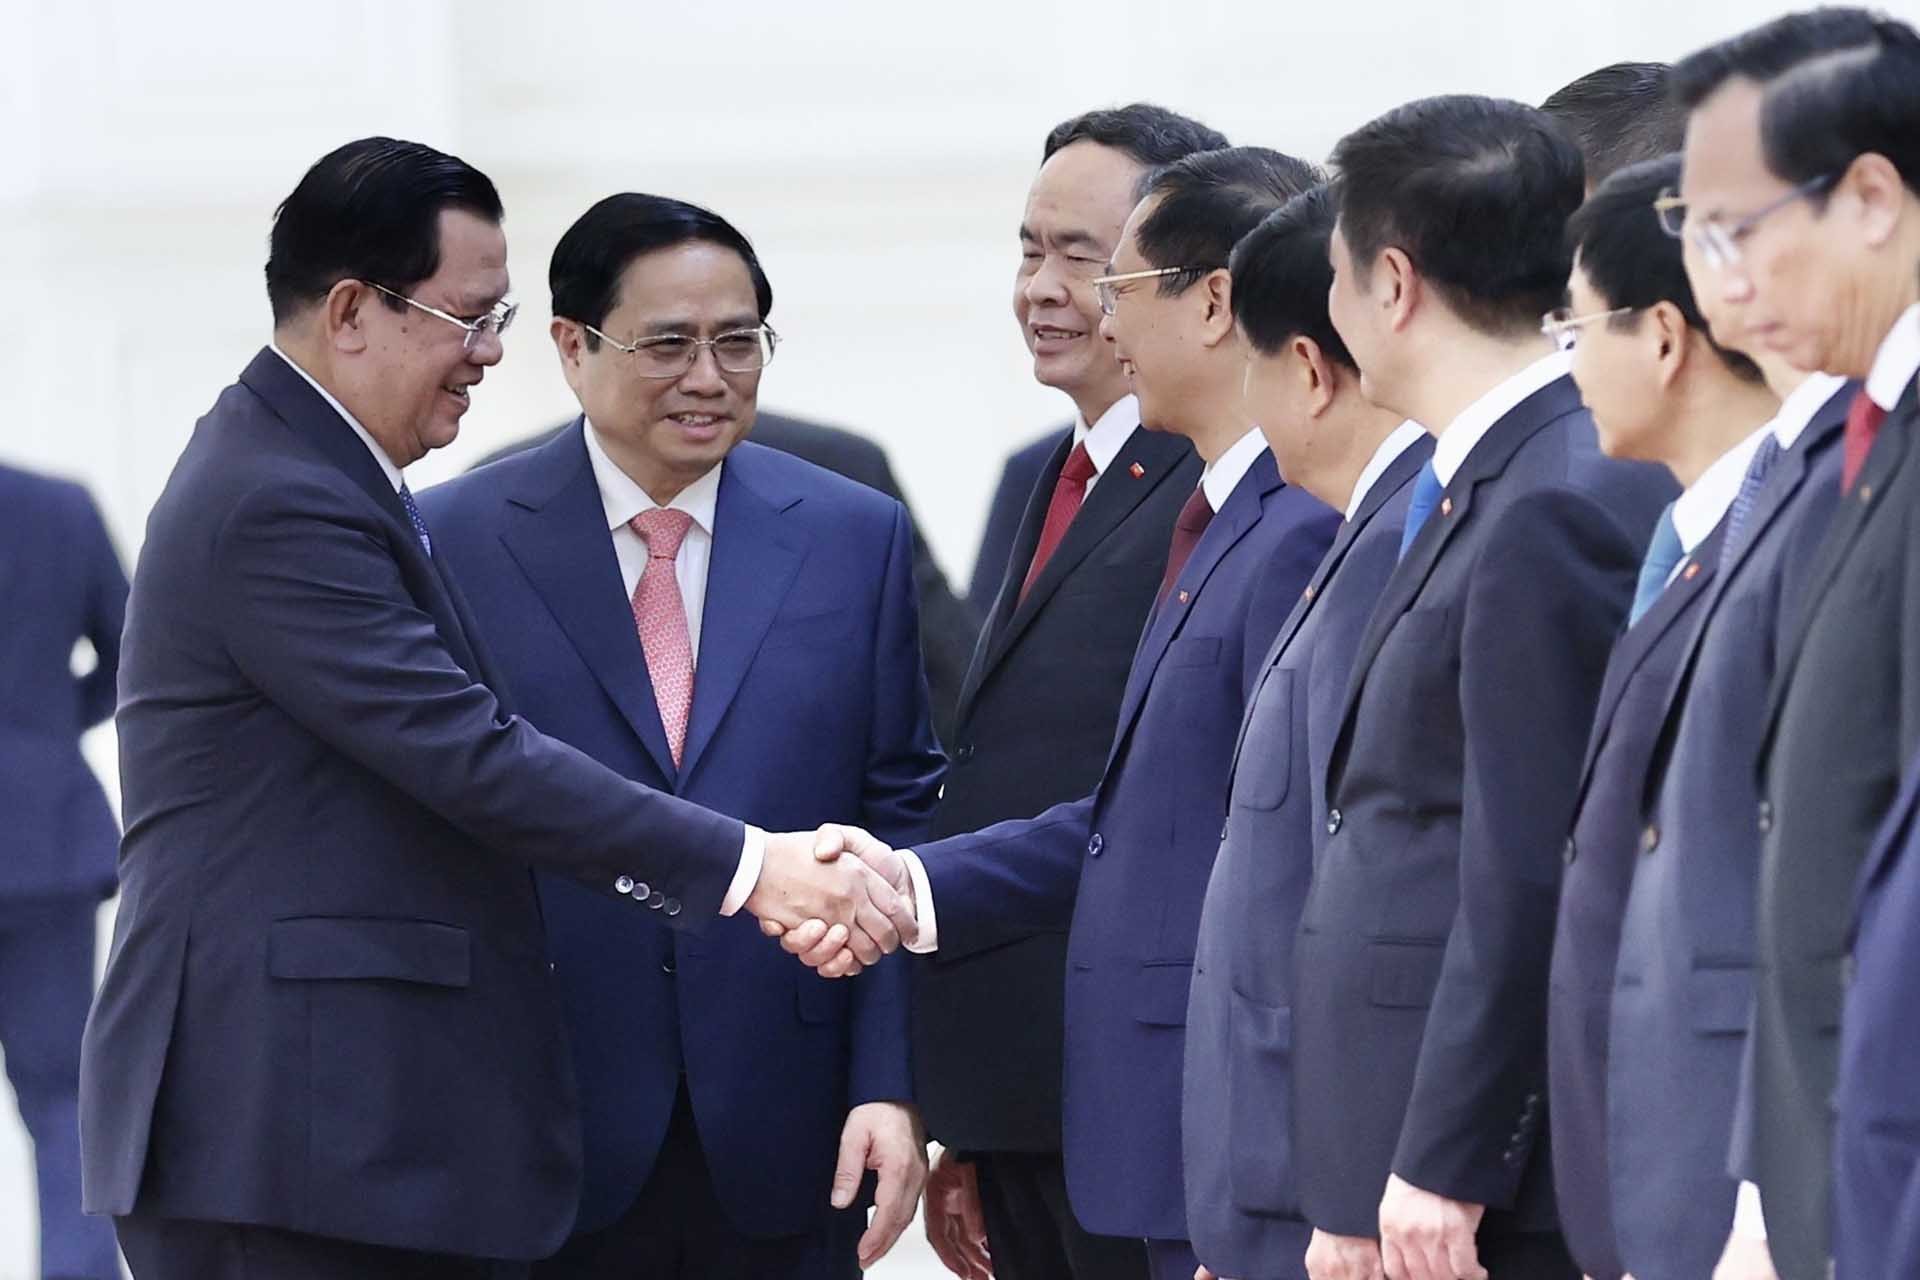 Thủ tướng Phạm Minh Chính giới thiệu với Thủ tướng Vương quốc Campuchia Samdech Techo Hun Sen các thành viên Đoàn đại biểu Chính phủ Việt Nam. (Nguồn: TTXVN)